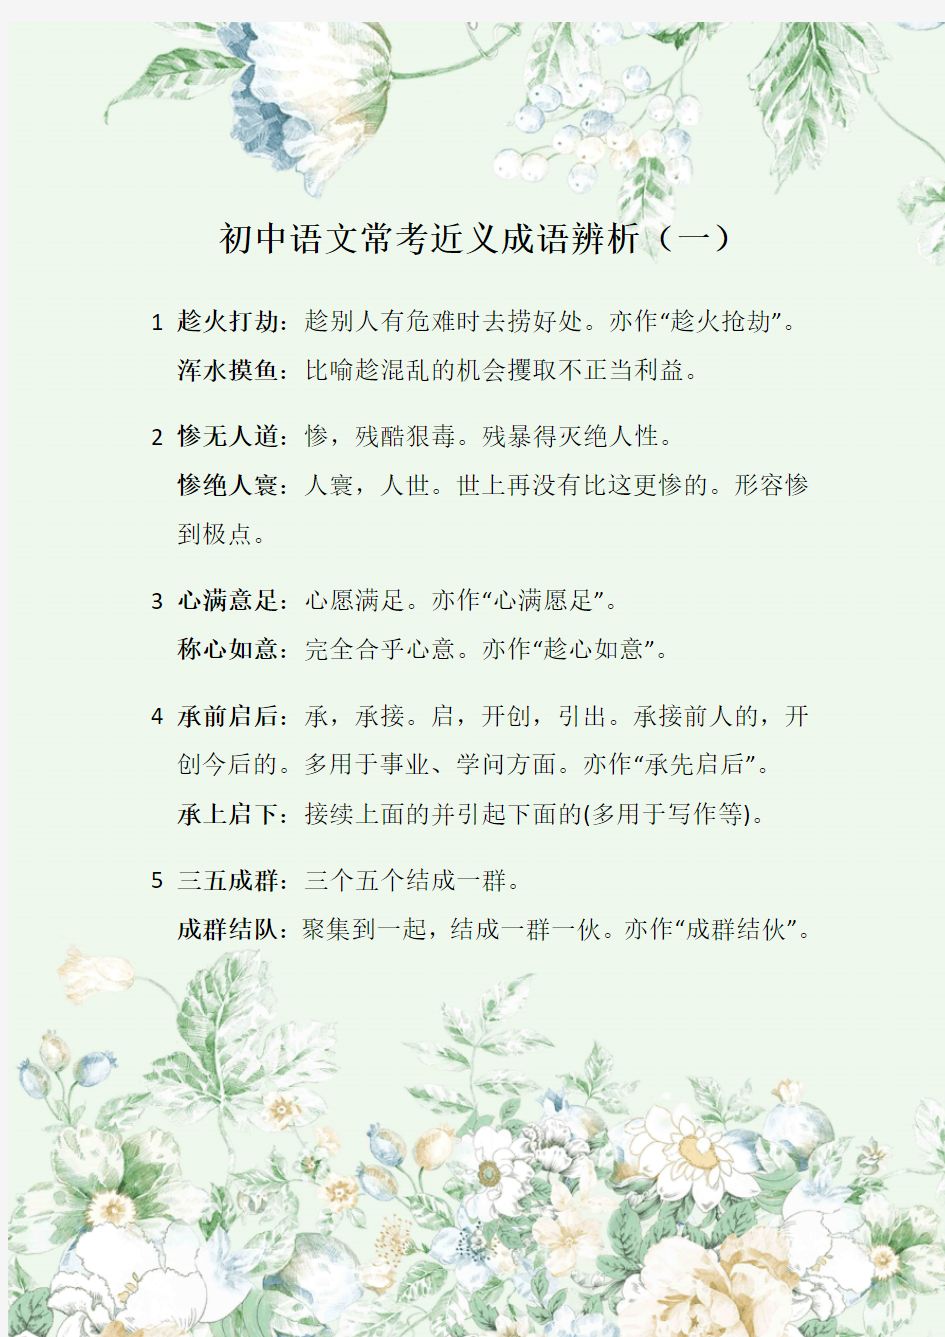 初中语文常用近义成语辨析(一)